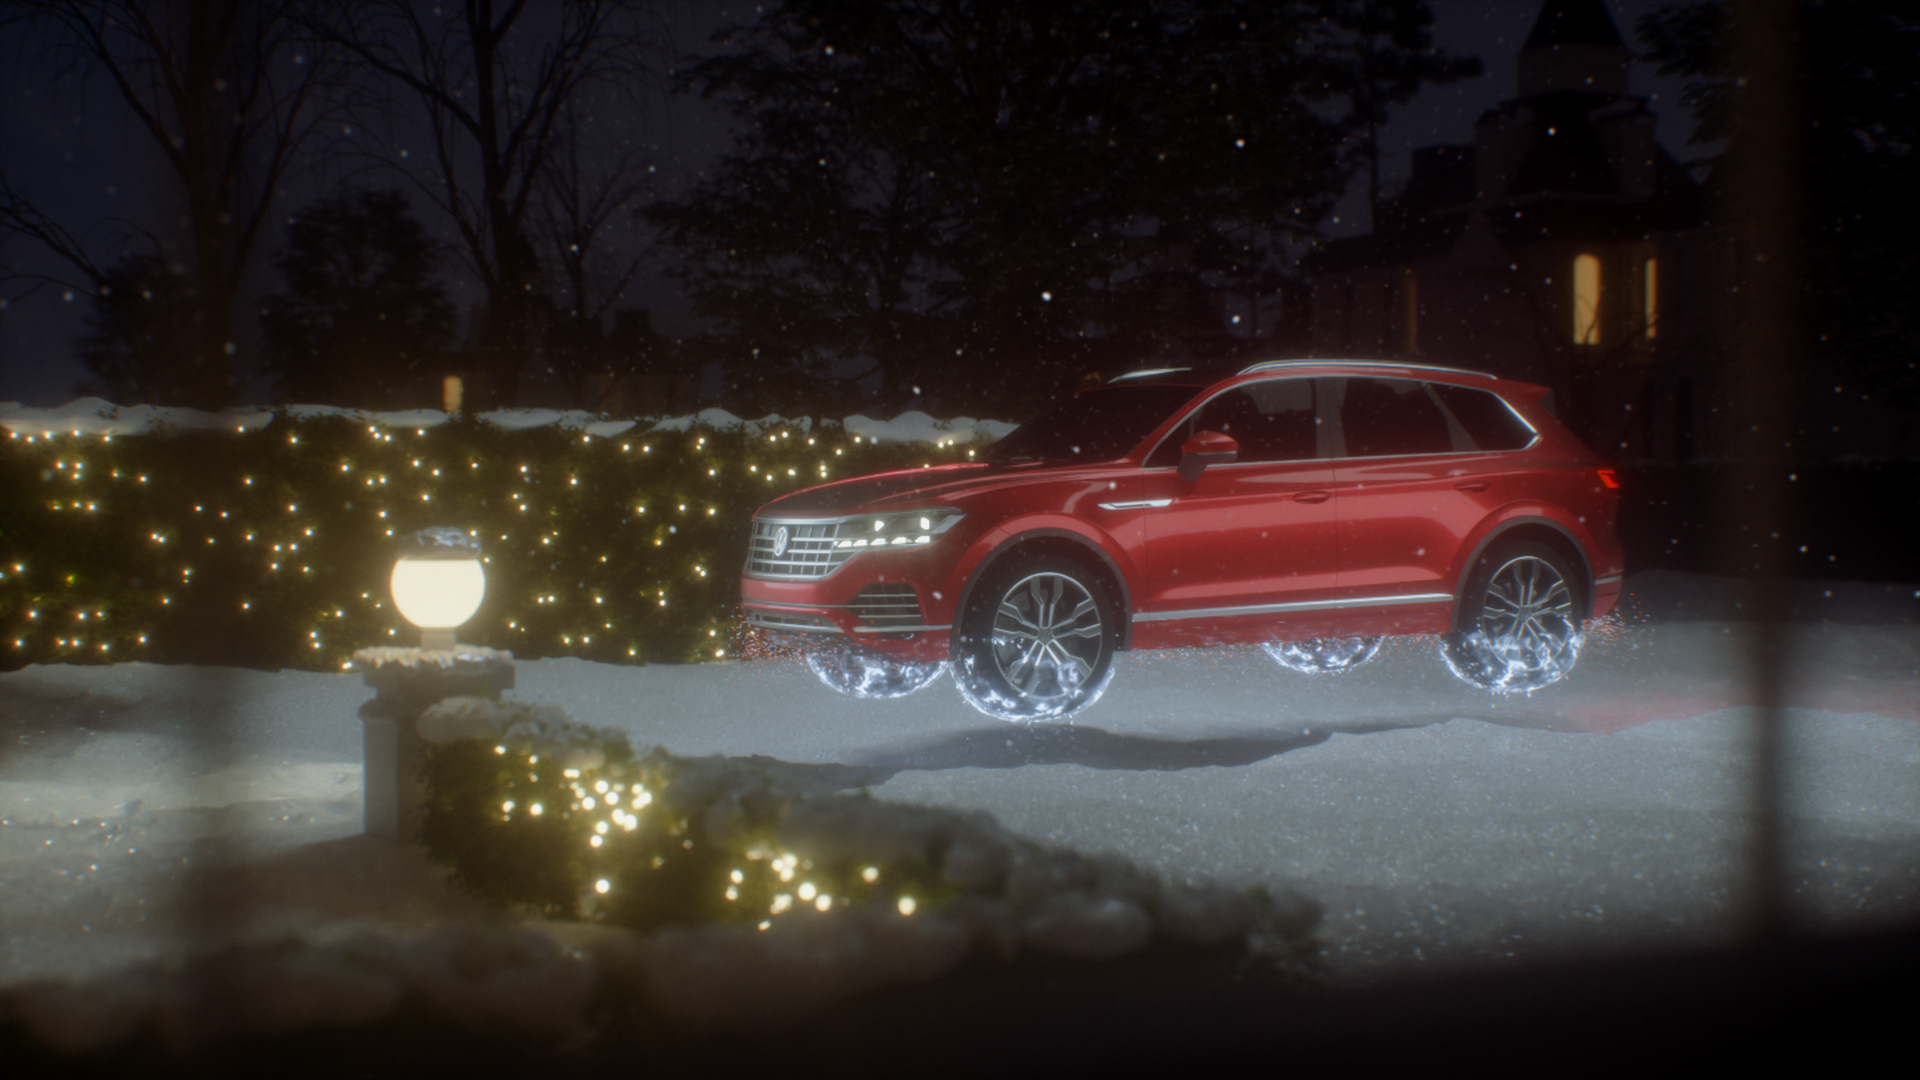 Santa’s Volkswagen